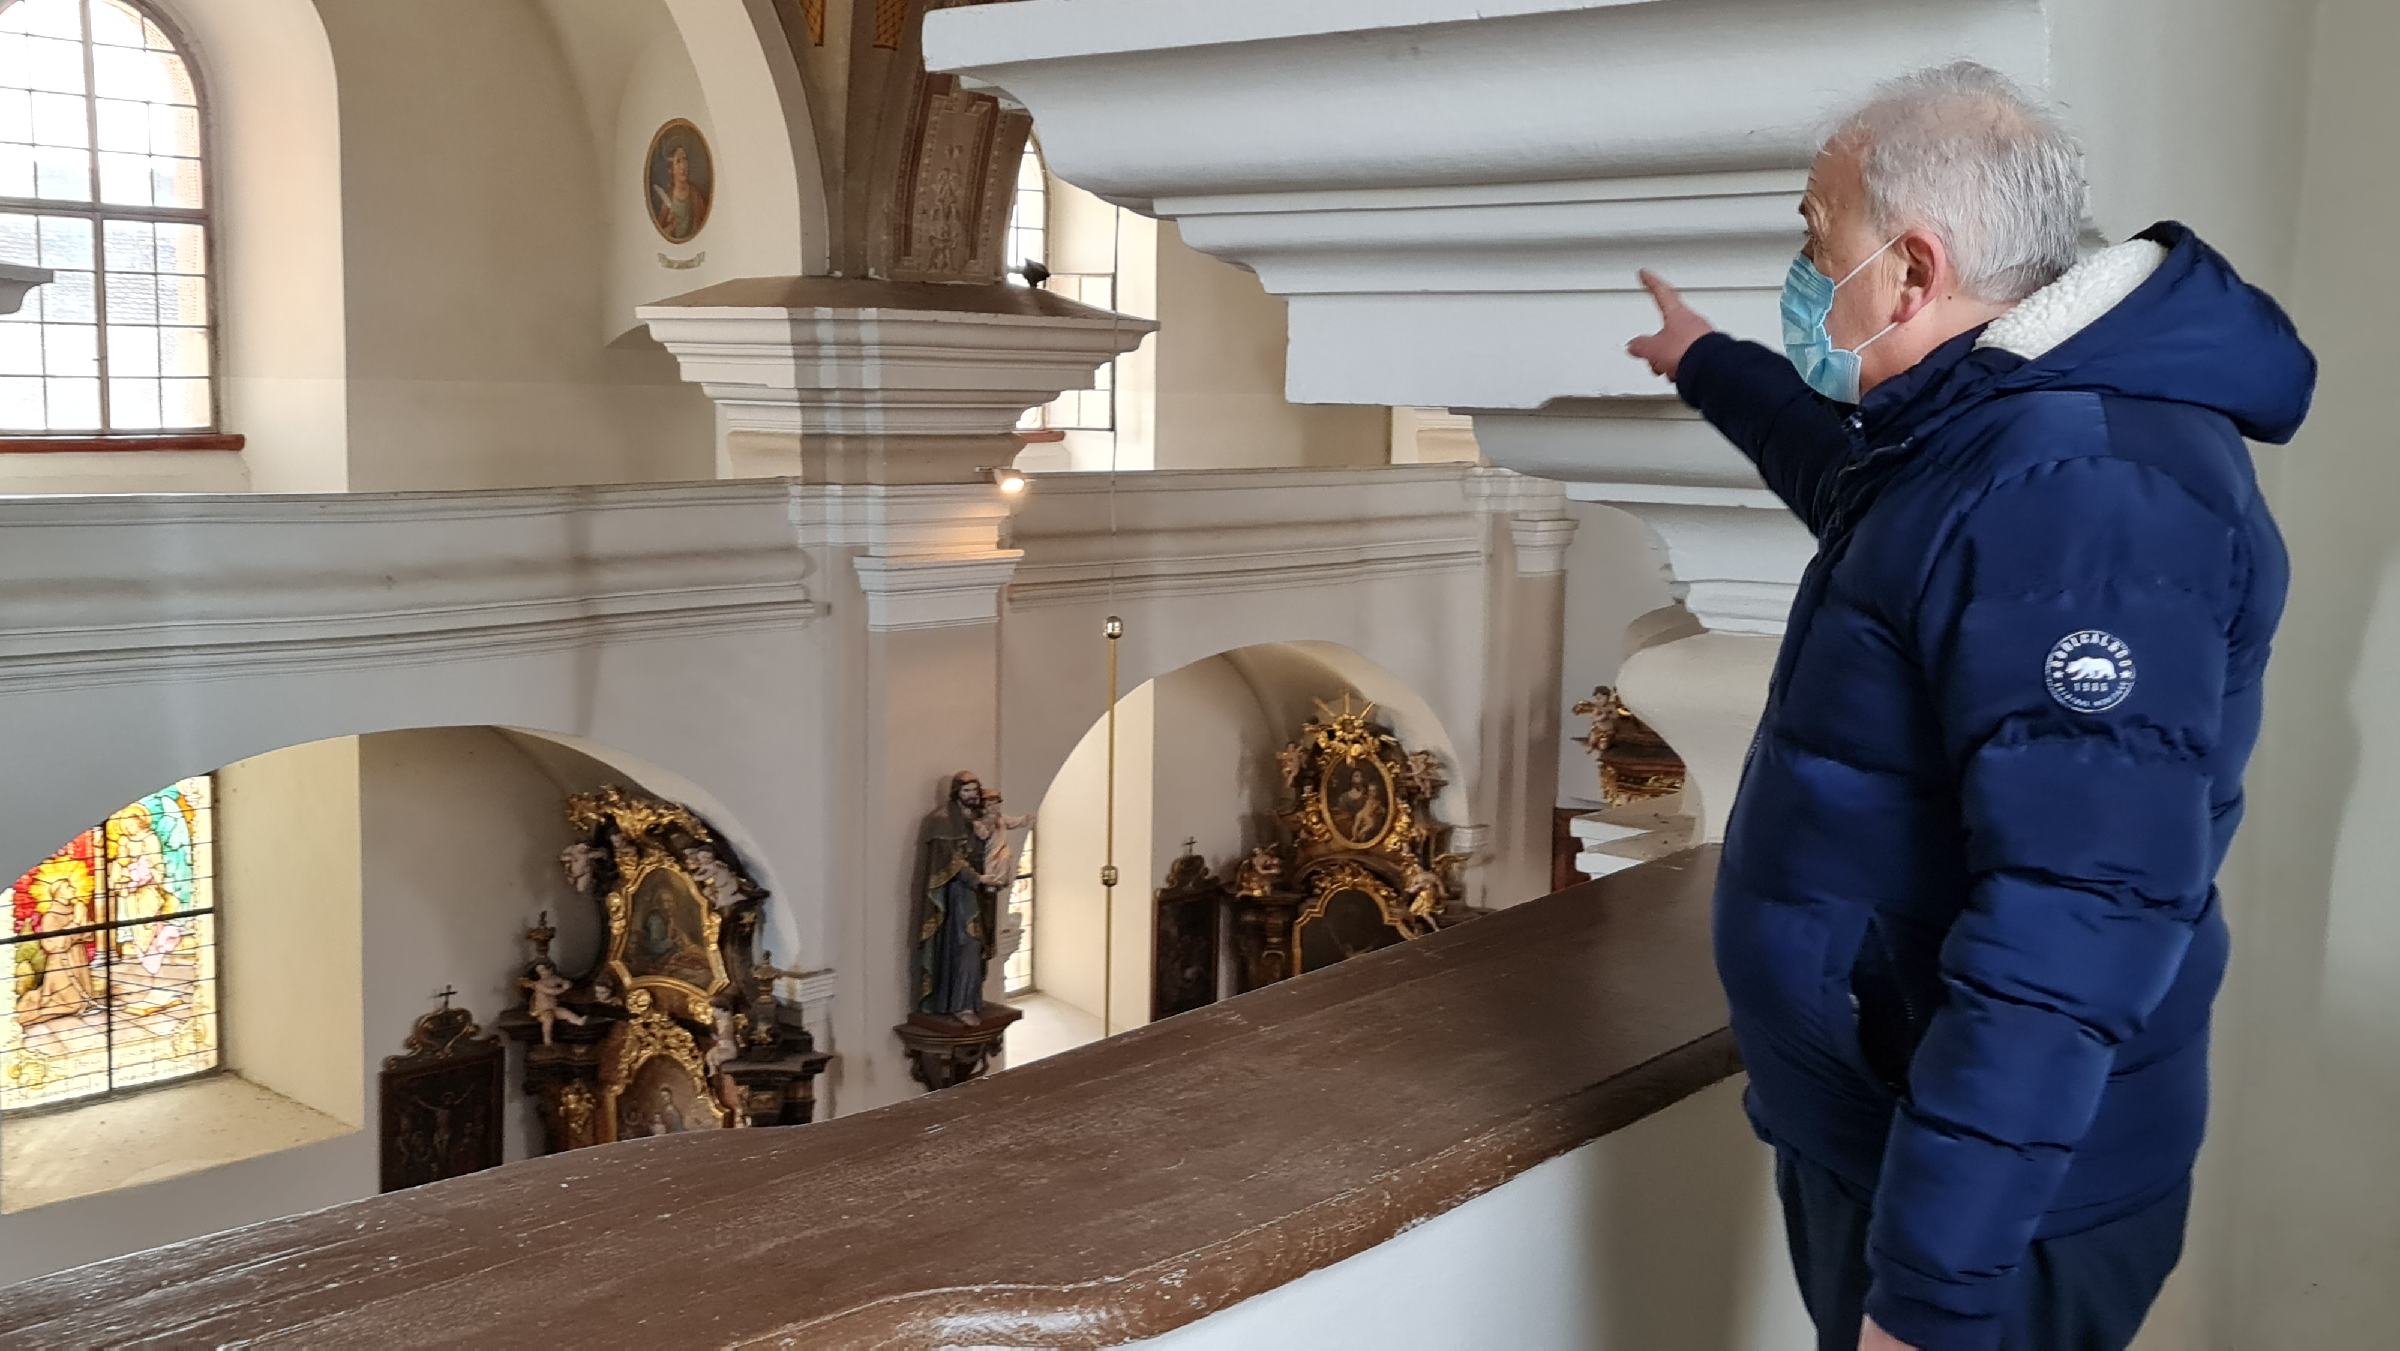 FOTO in VIDEO: Najmanj pol milijona evrov potrebnih za nujno sanacijo trojiške cerkve po potresu